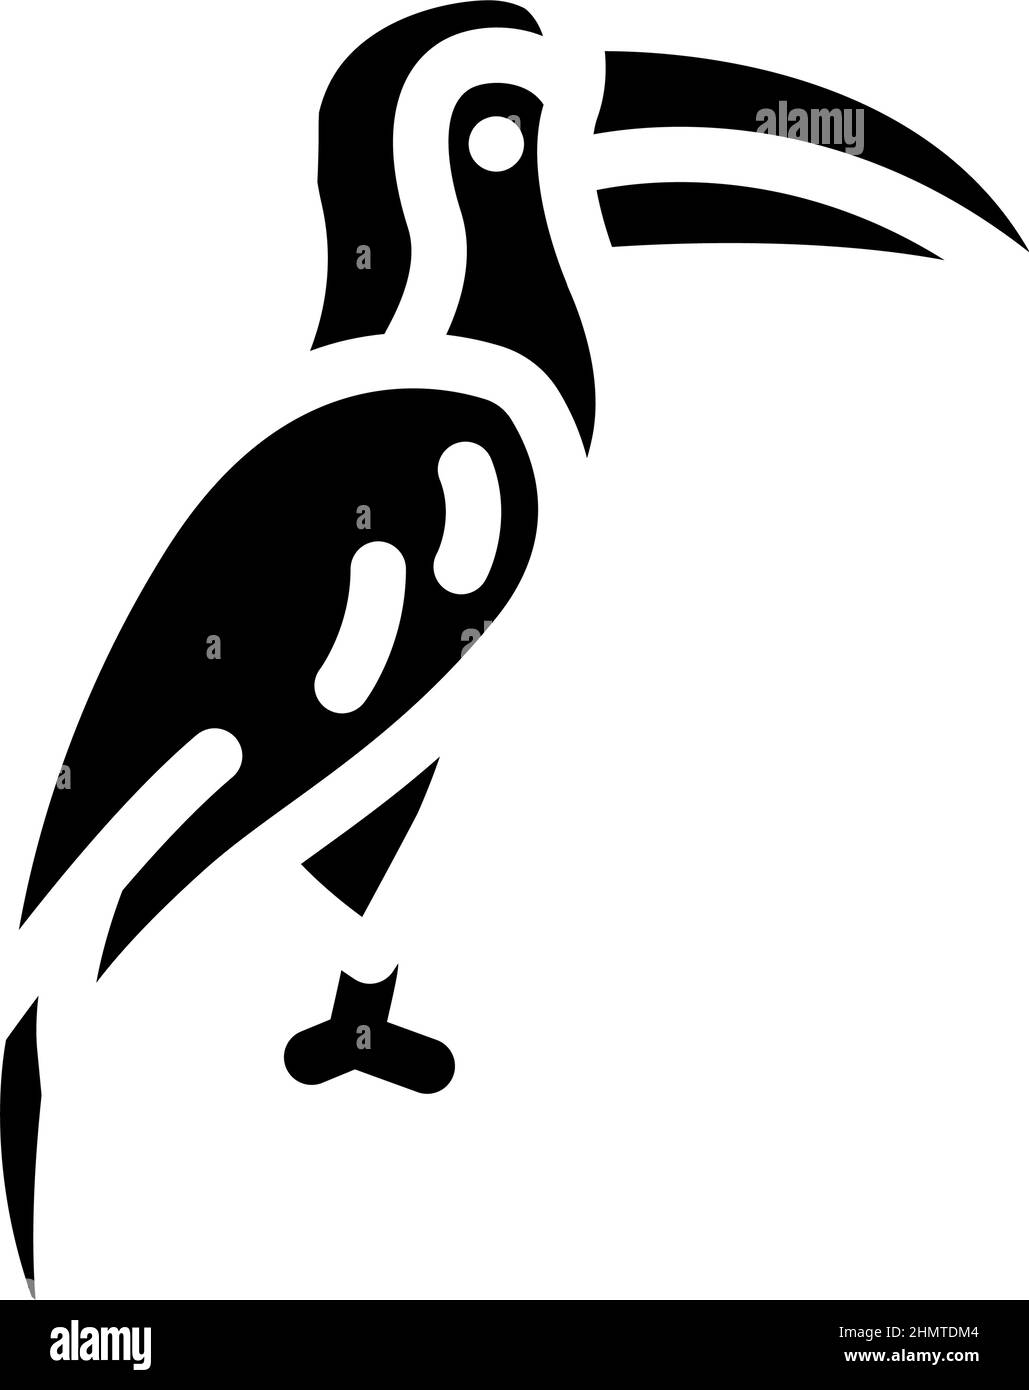 toucan bird glyph icon vector illustration Stock Vector